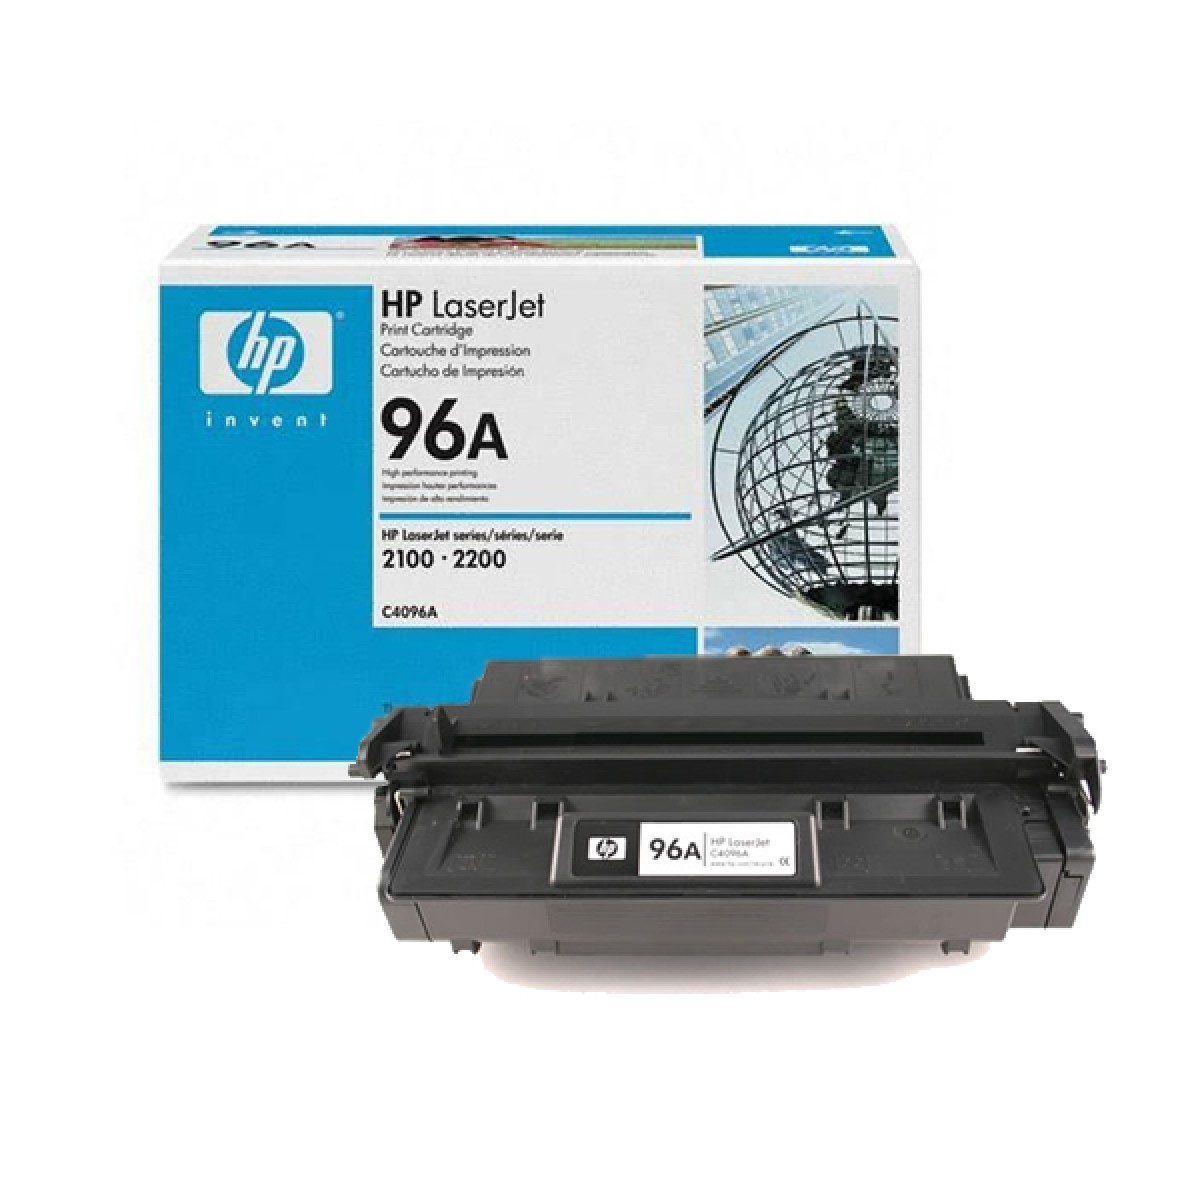 HP LaserJet 4 C4096A HP No 96A Laser Cartridge